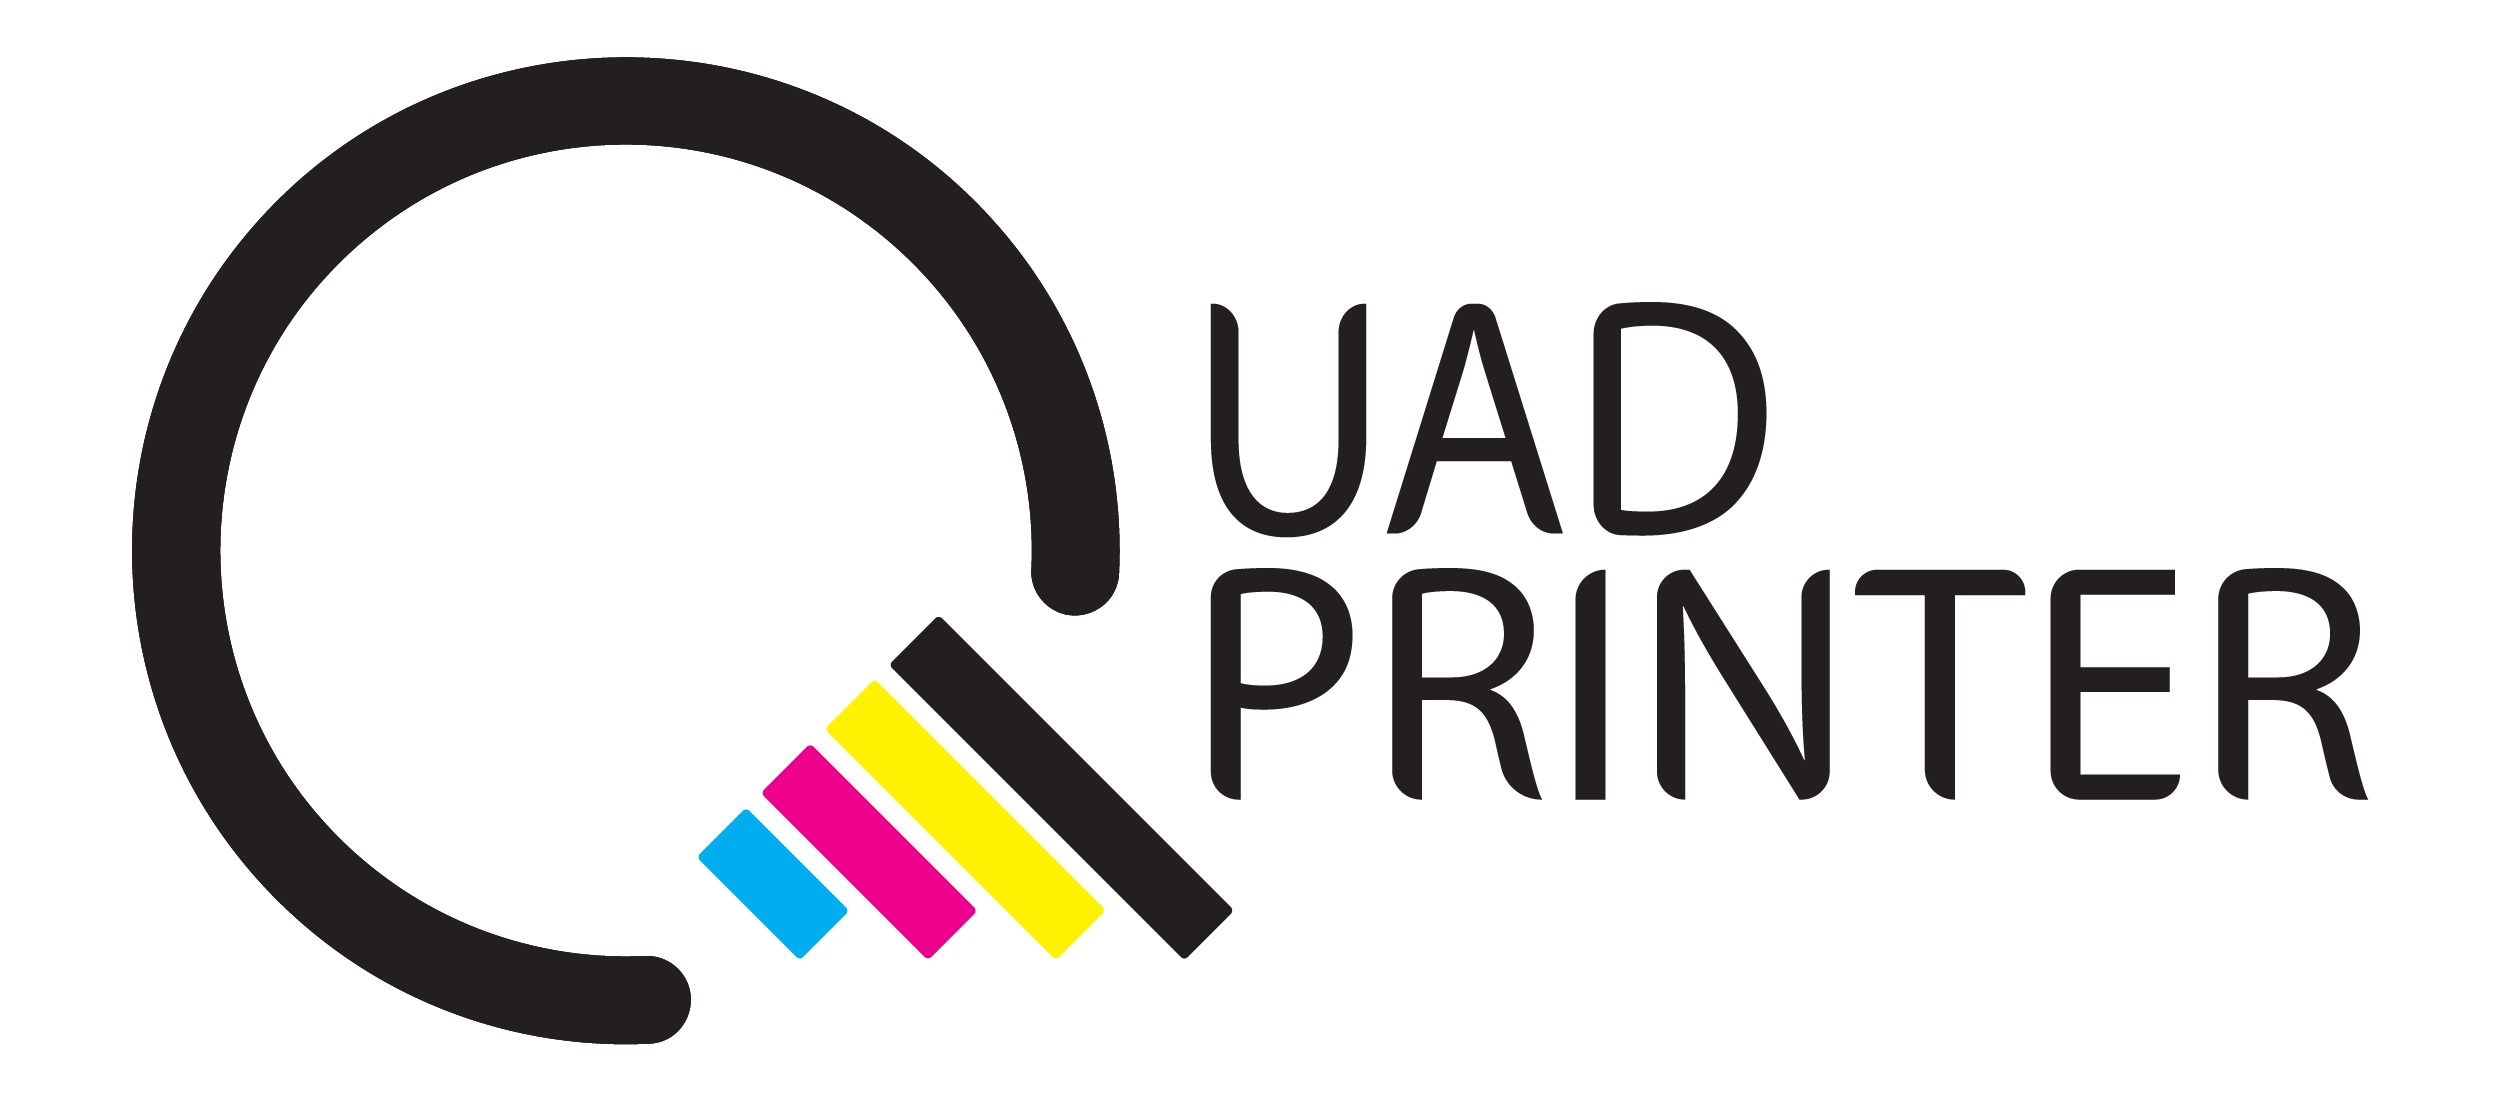 Quad Printer